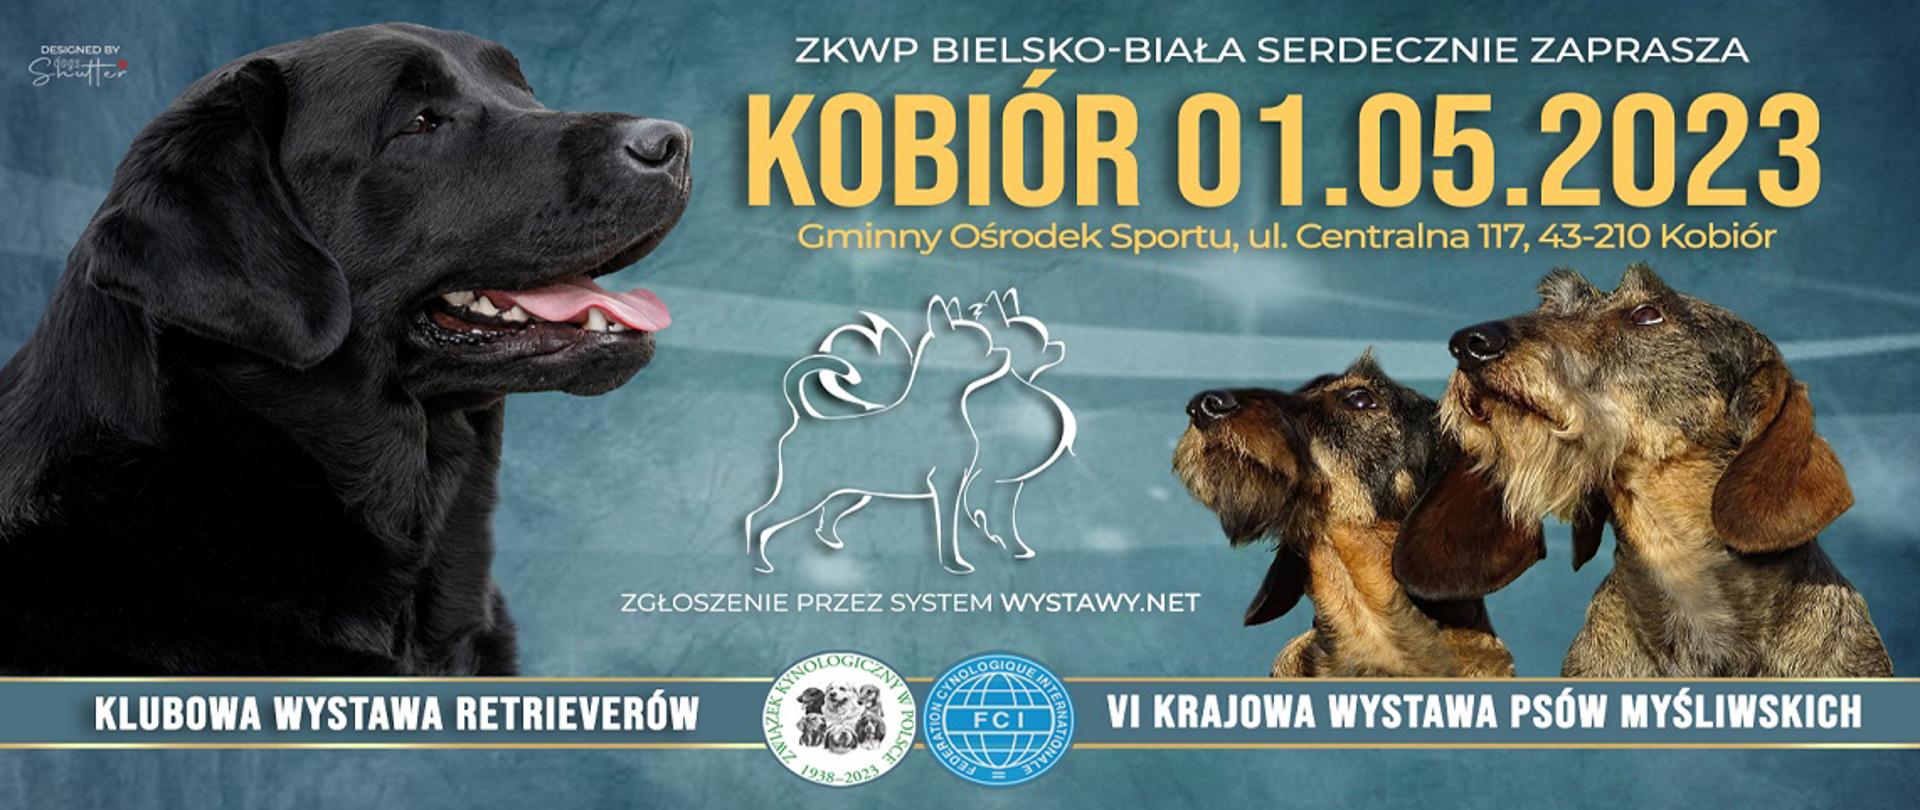 Baner krajowej wystawy psów na którym widać głowy trzech psów oraz informację o tym że wystawa odbędzie się w Kobiórze na Gminnym Ośrodku Sportu 1.05.2023 roku